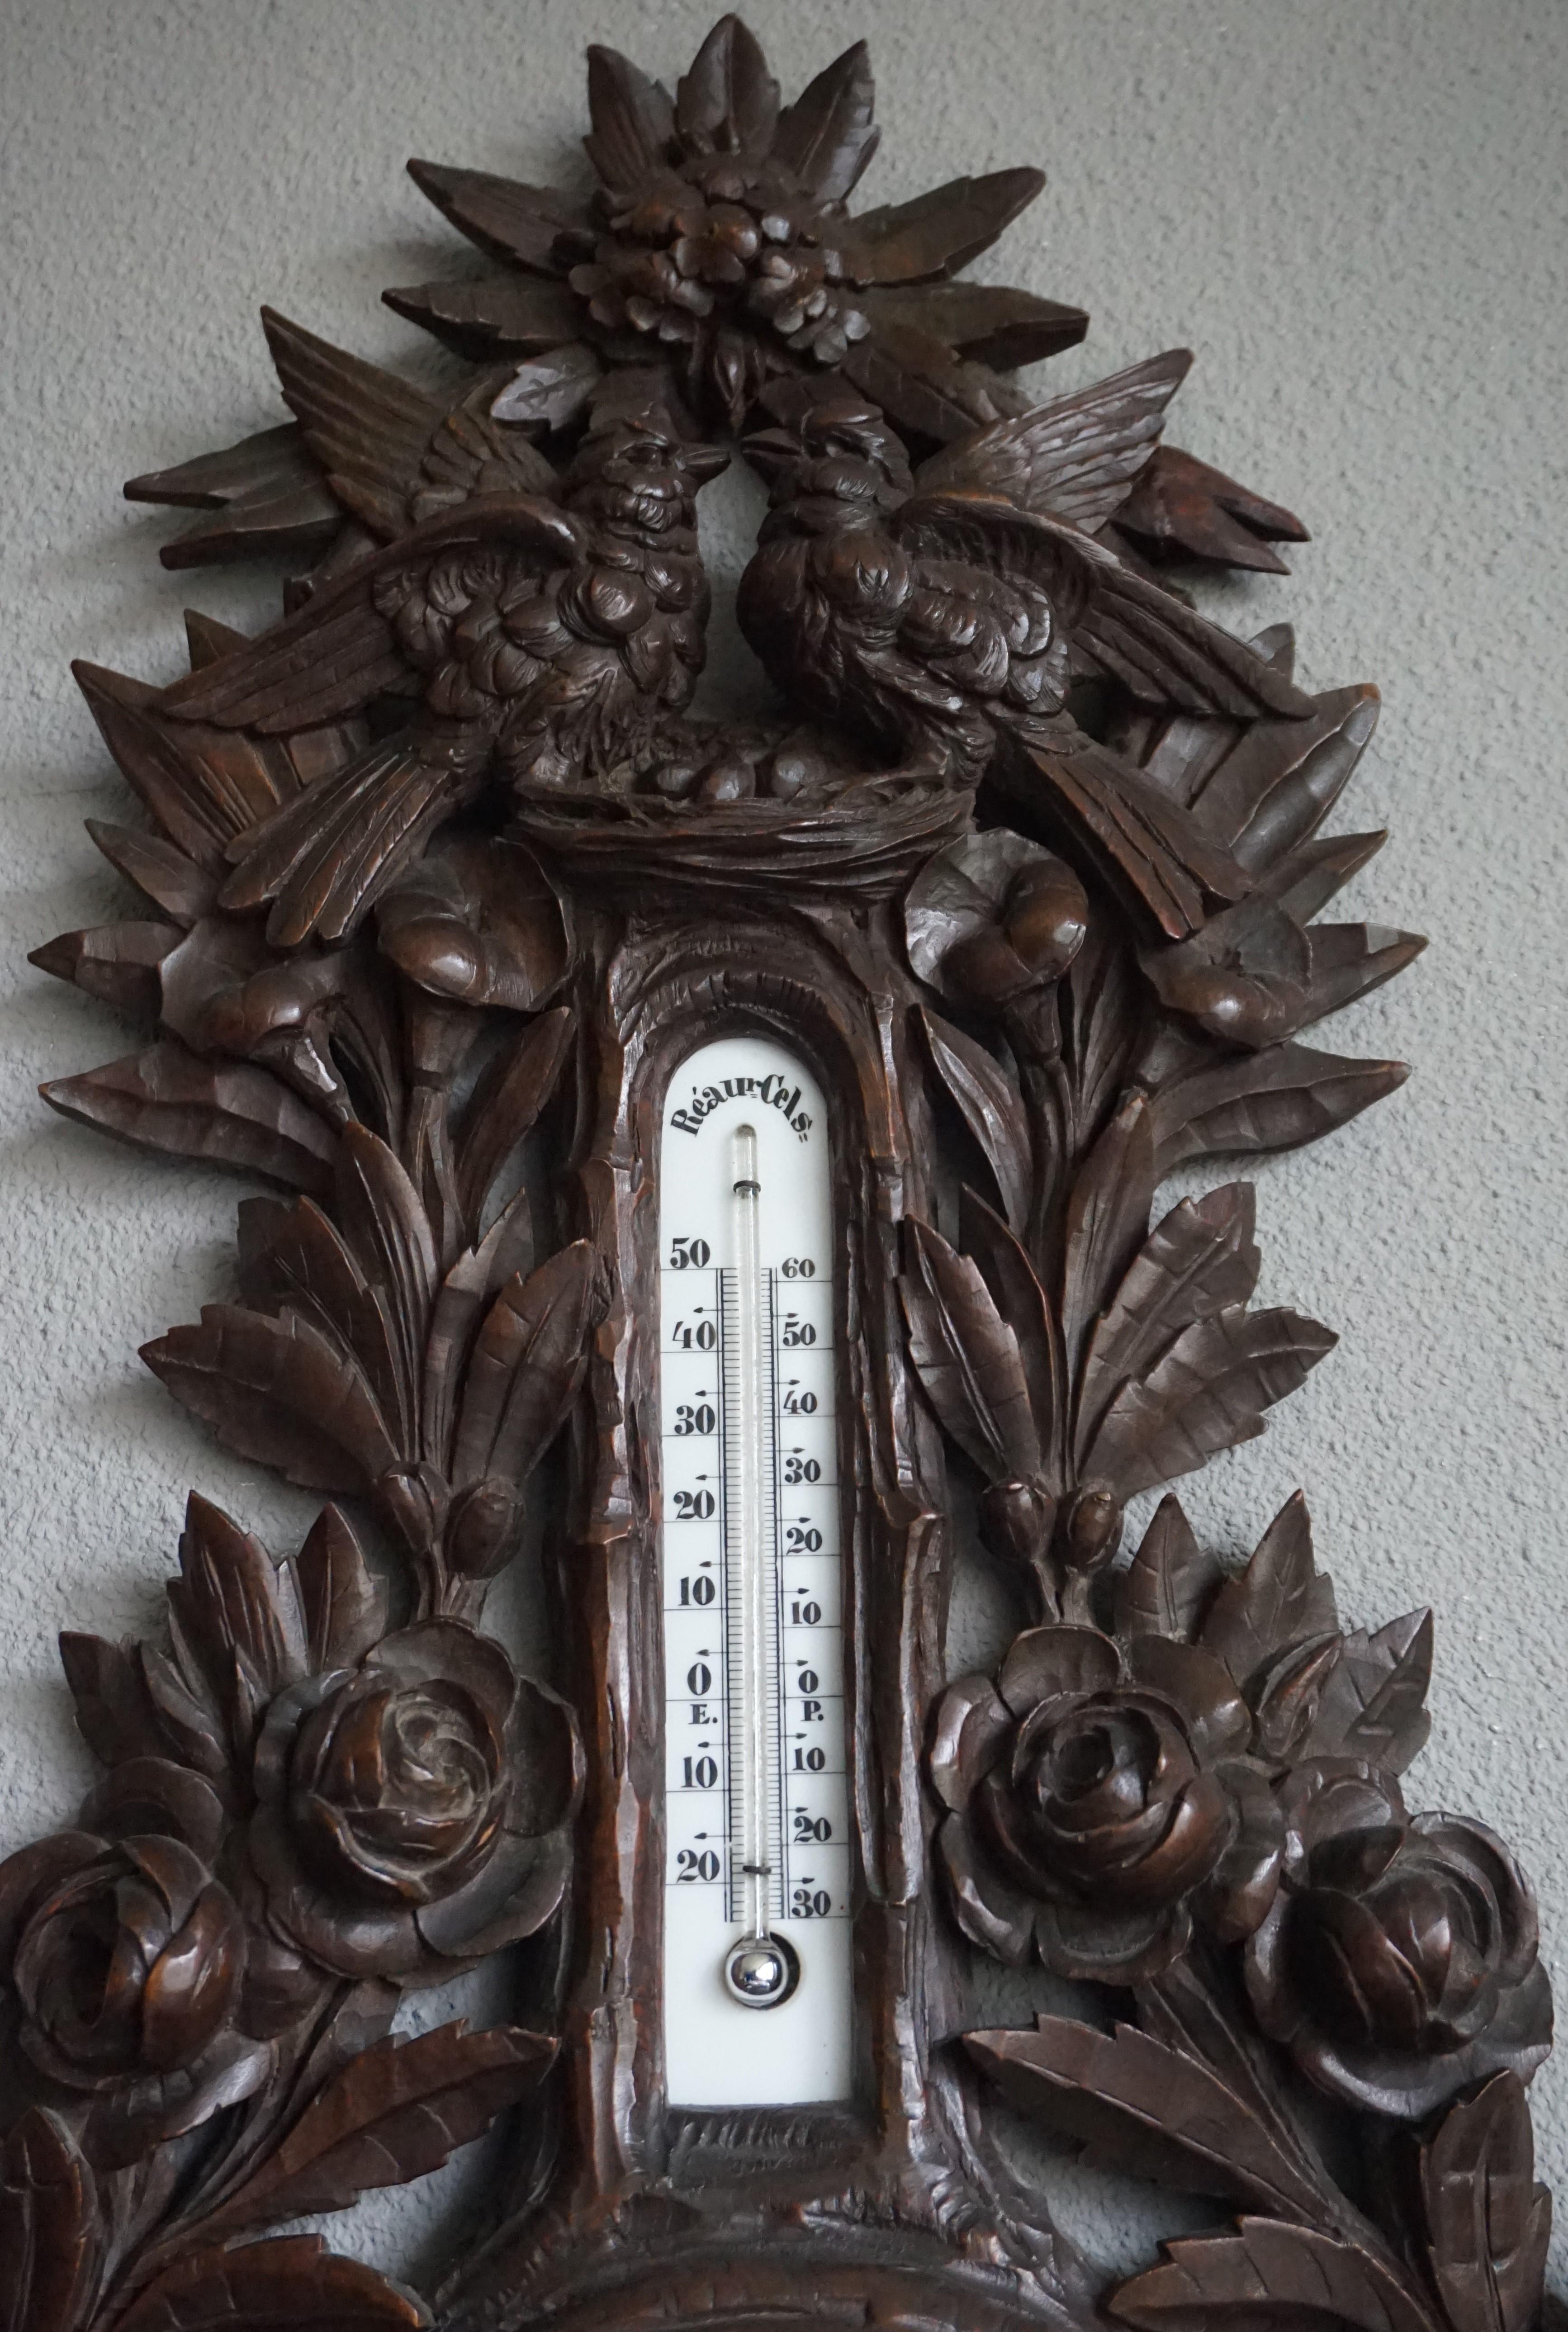 Großes und wunderschönes, Schweizer Schwarzwaldbarometer mit Thermometer.

Dieses von der Natur inspirierte, charmante und wunderschön handgeschnitzte Barometer zeigt die Qualität der Handwerkskunst der Schweizer Schwarzwälder um die